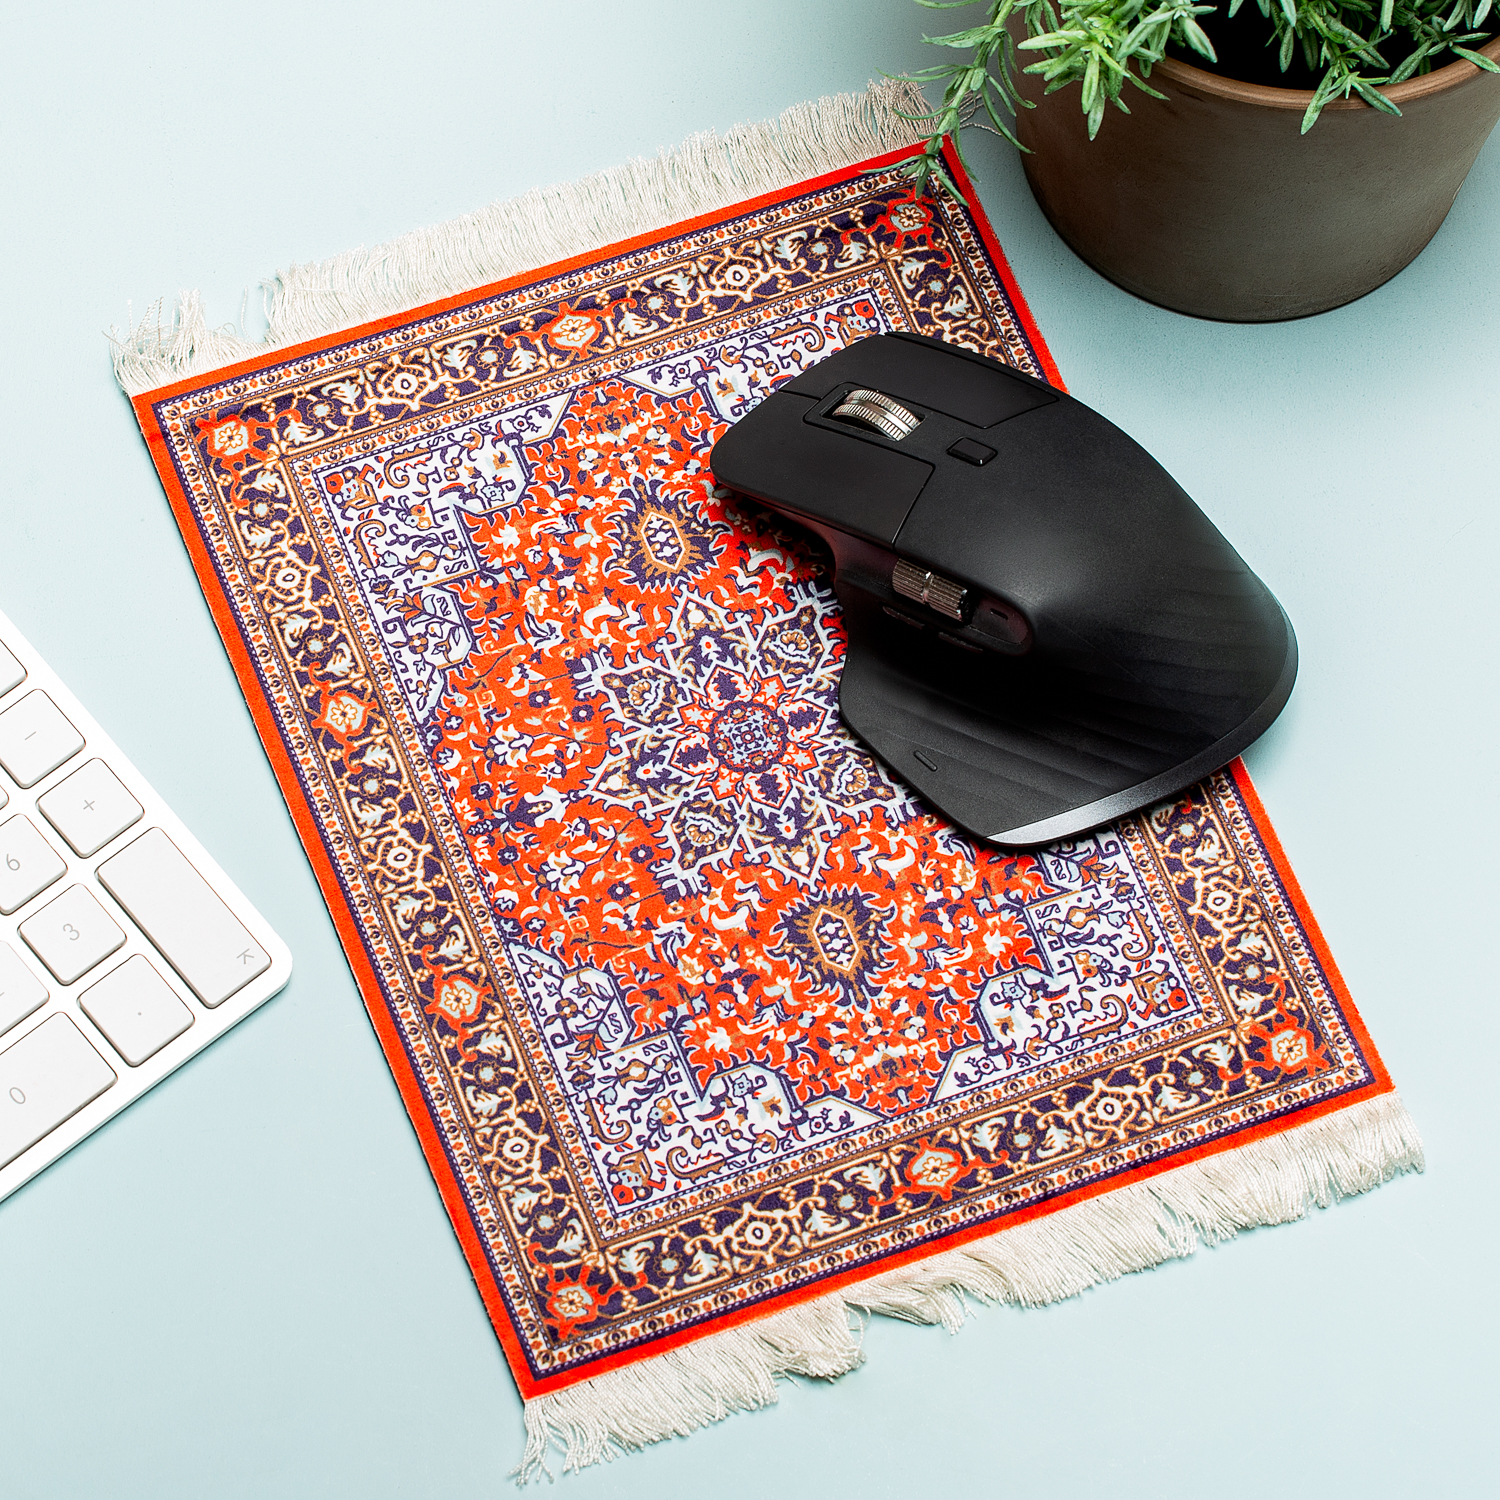 eetbaar schreeuw Word gek Perzisch tapijt muismat van Invotis bestel je online bij Cadeau